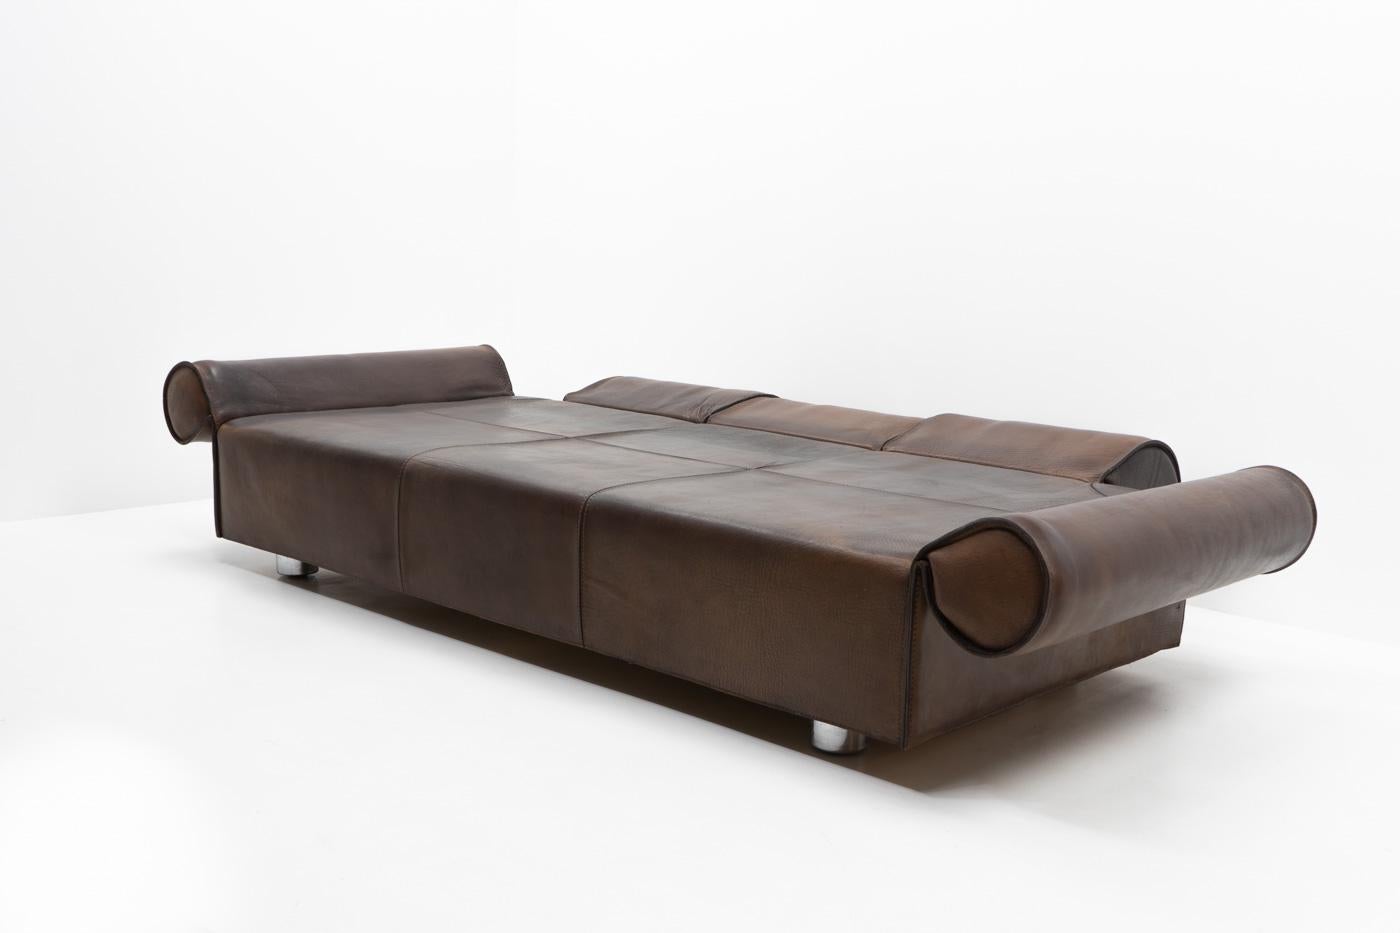 Italian Design Marzio Cecchi Three-seater Sofa in Brown Buffalo Leather, 1970s For Sale 2